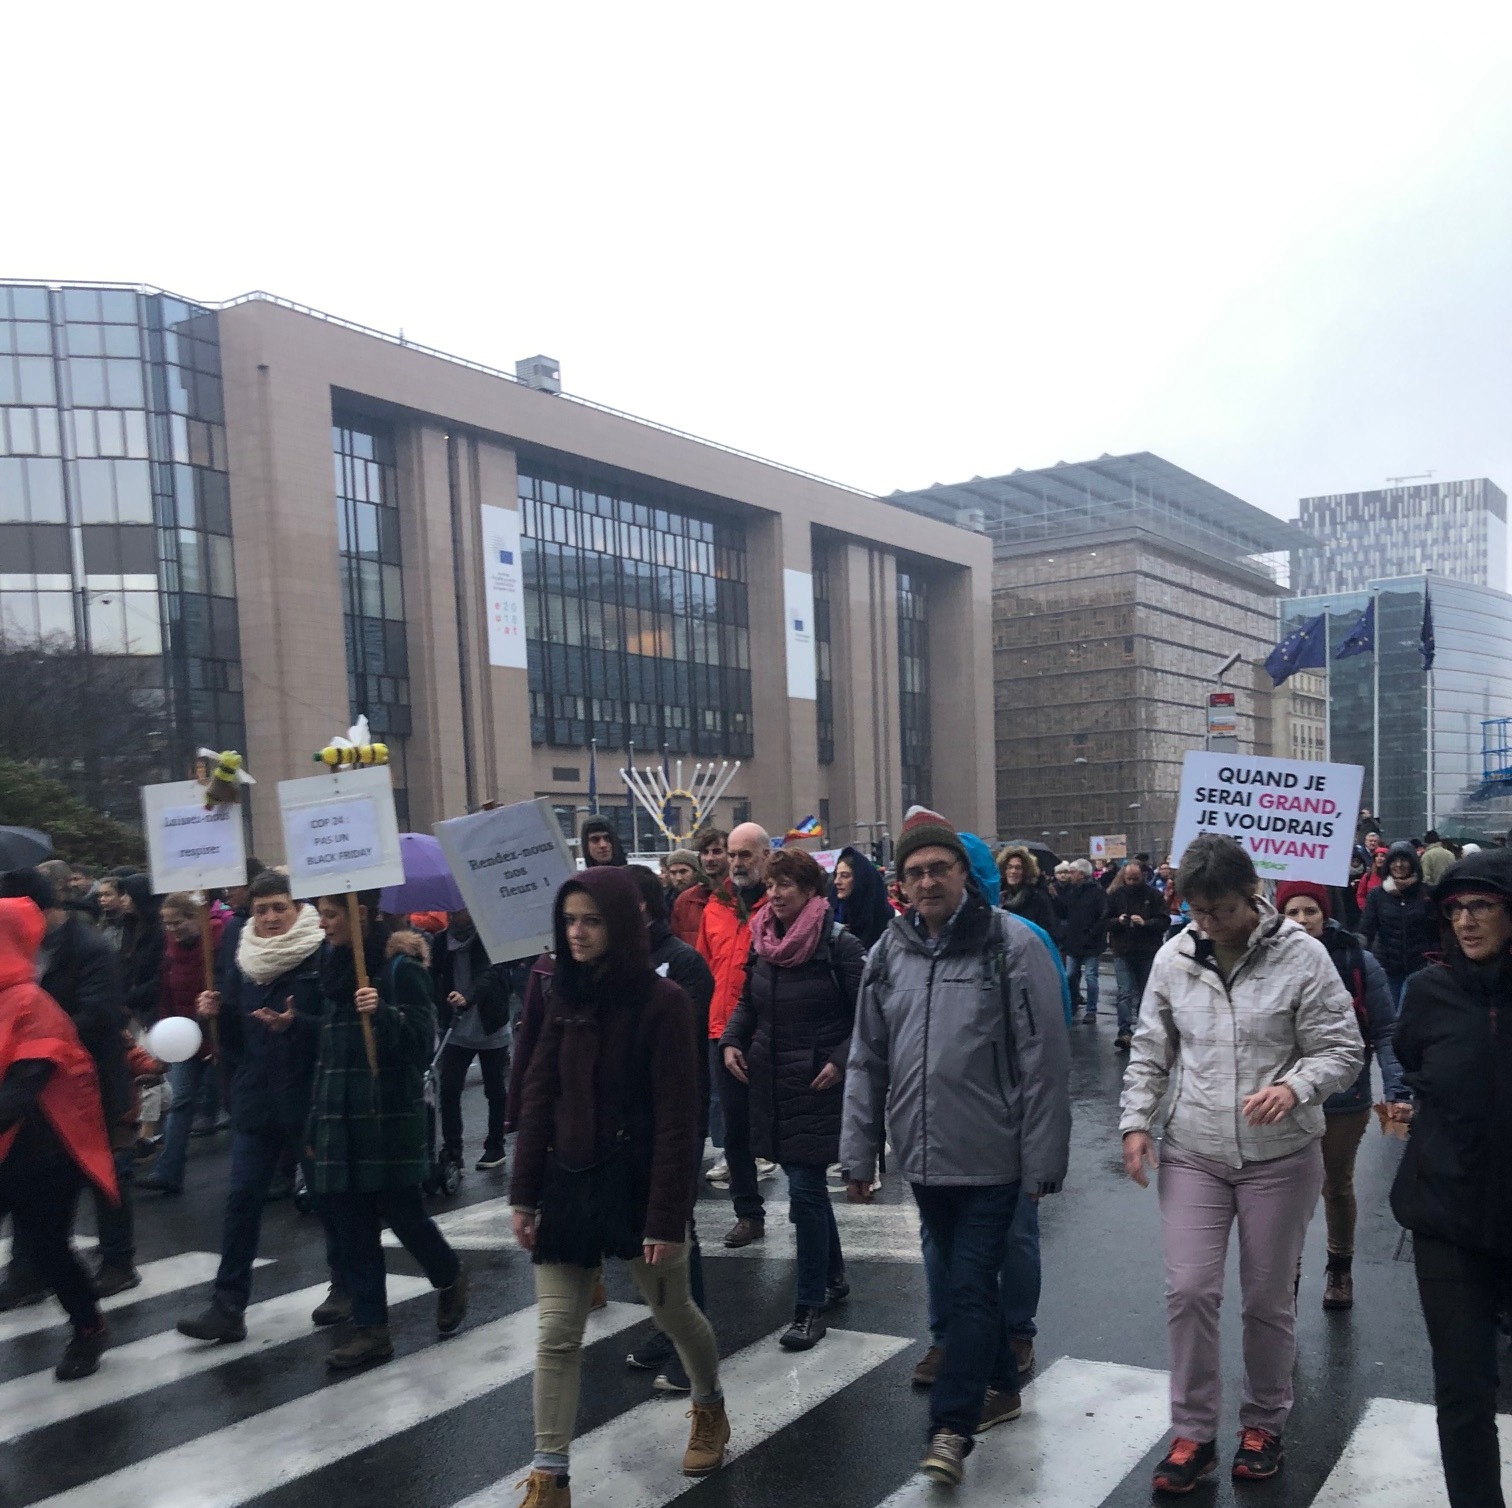 آلاف الاشخاص يشاركون بمسيرة مناهضة لتغير المناخ في بروكسل